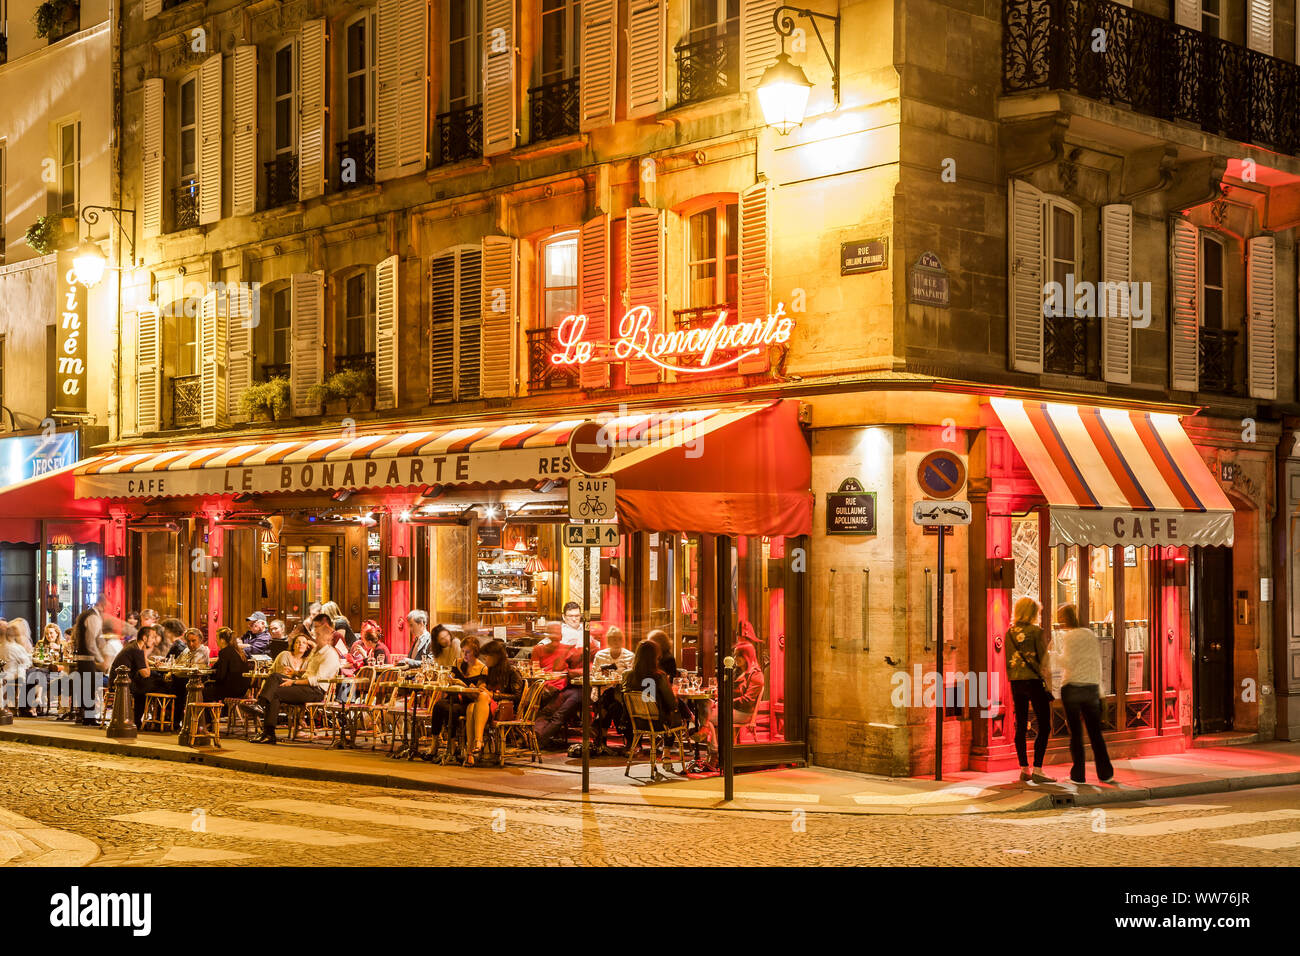 France, Paris, Saint-Germain-des-PrÃ©s, Le Bonaparte, Cafe, Restaurant, Brasserie Stock Photo